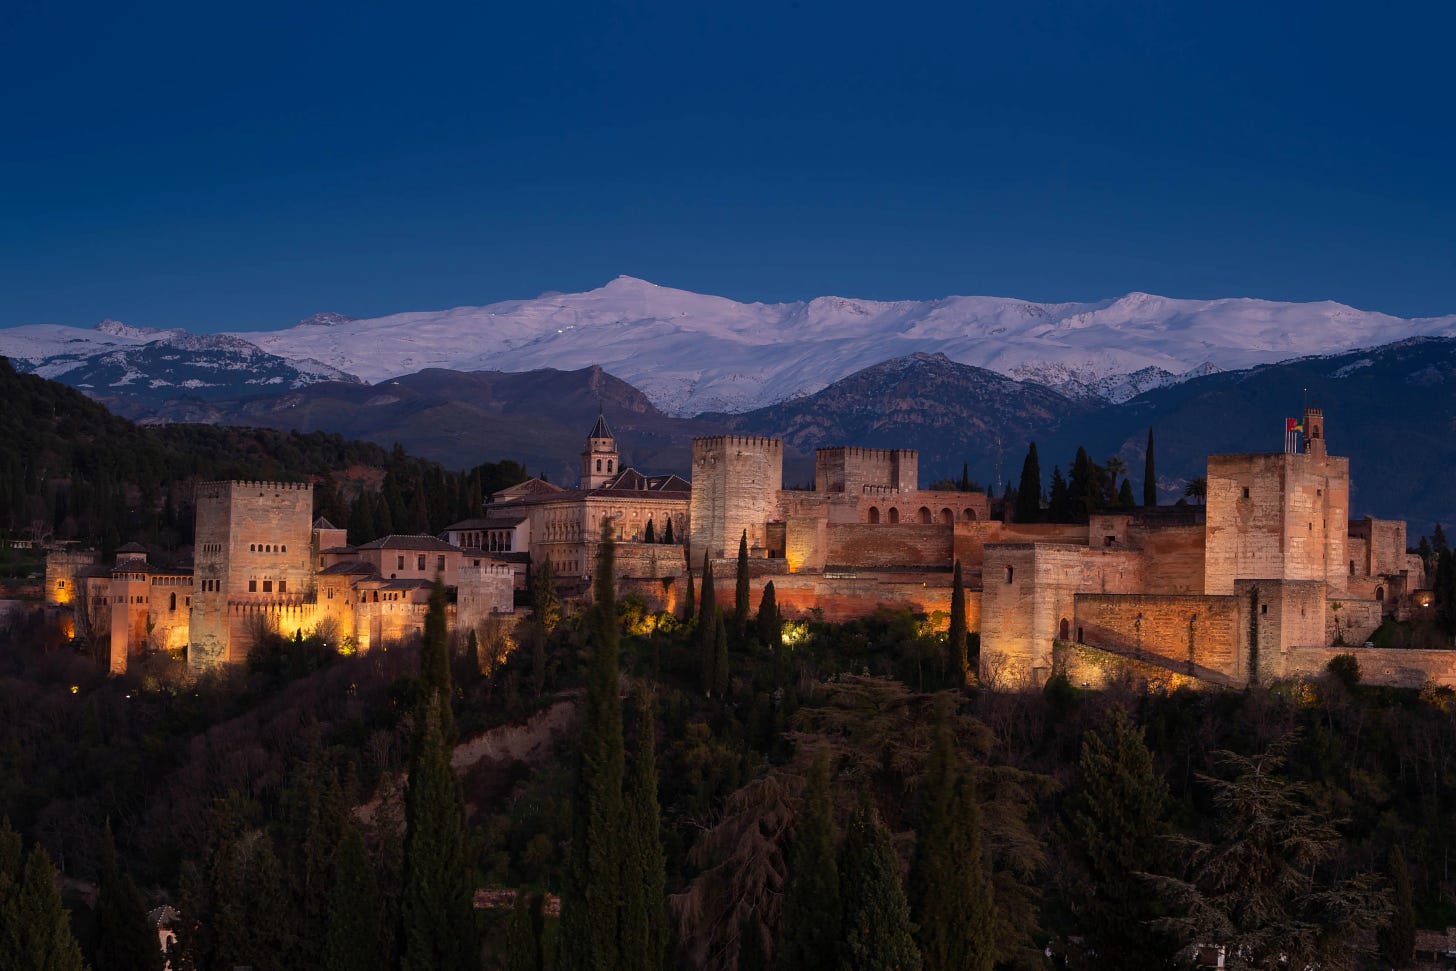 Espectacular fotografía de La Alhambra tomada por Pepe Marín